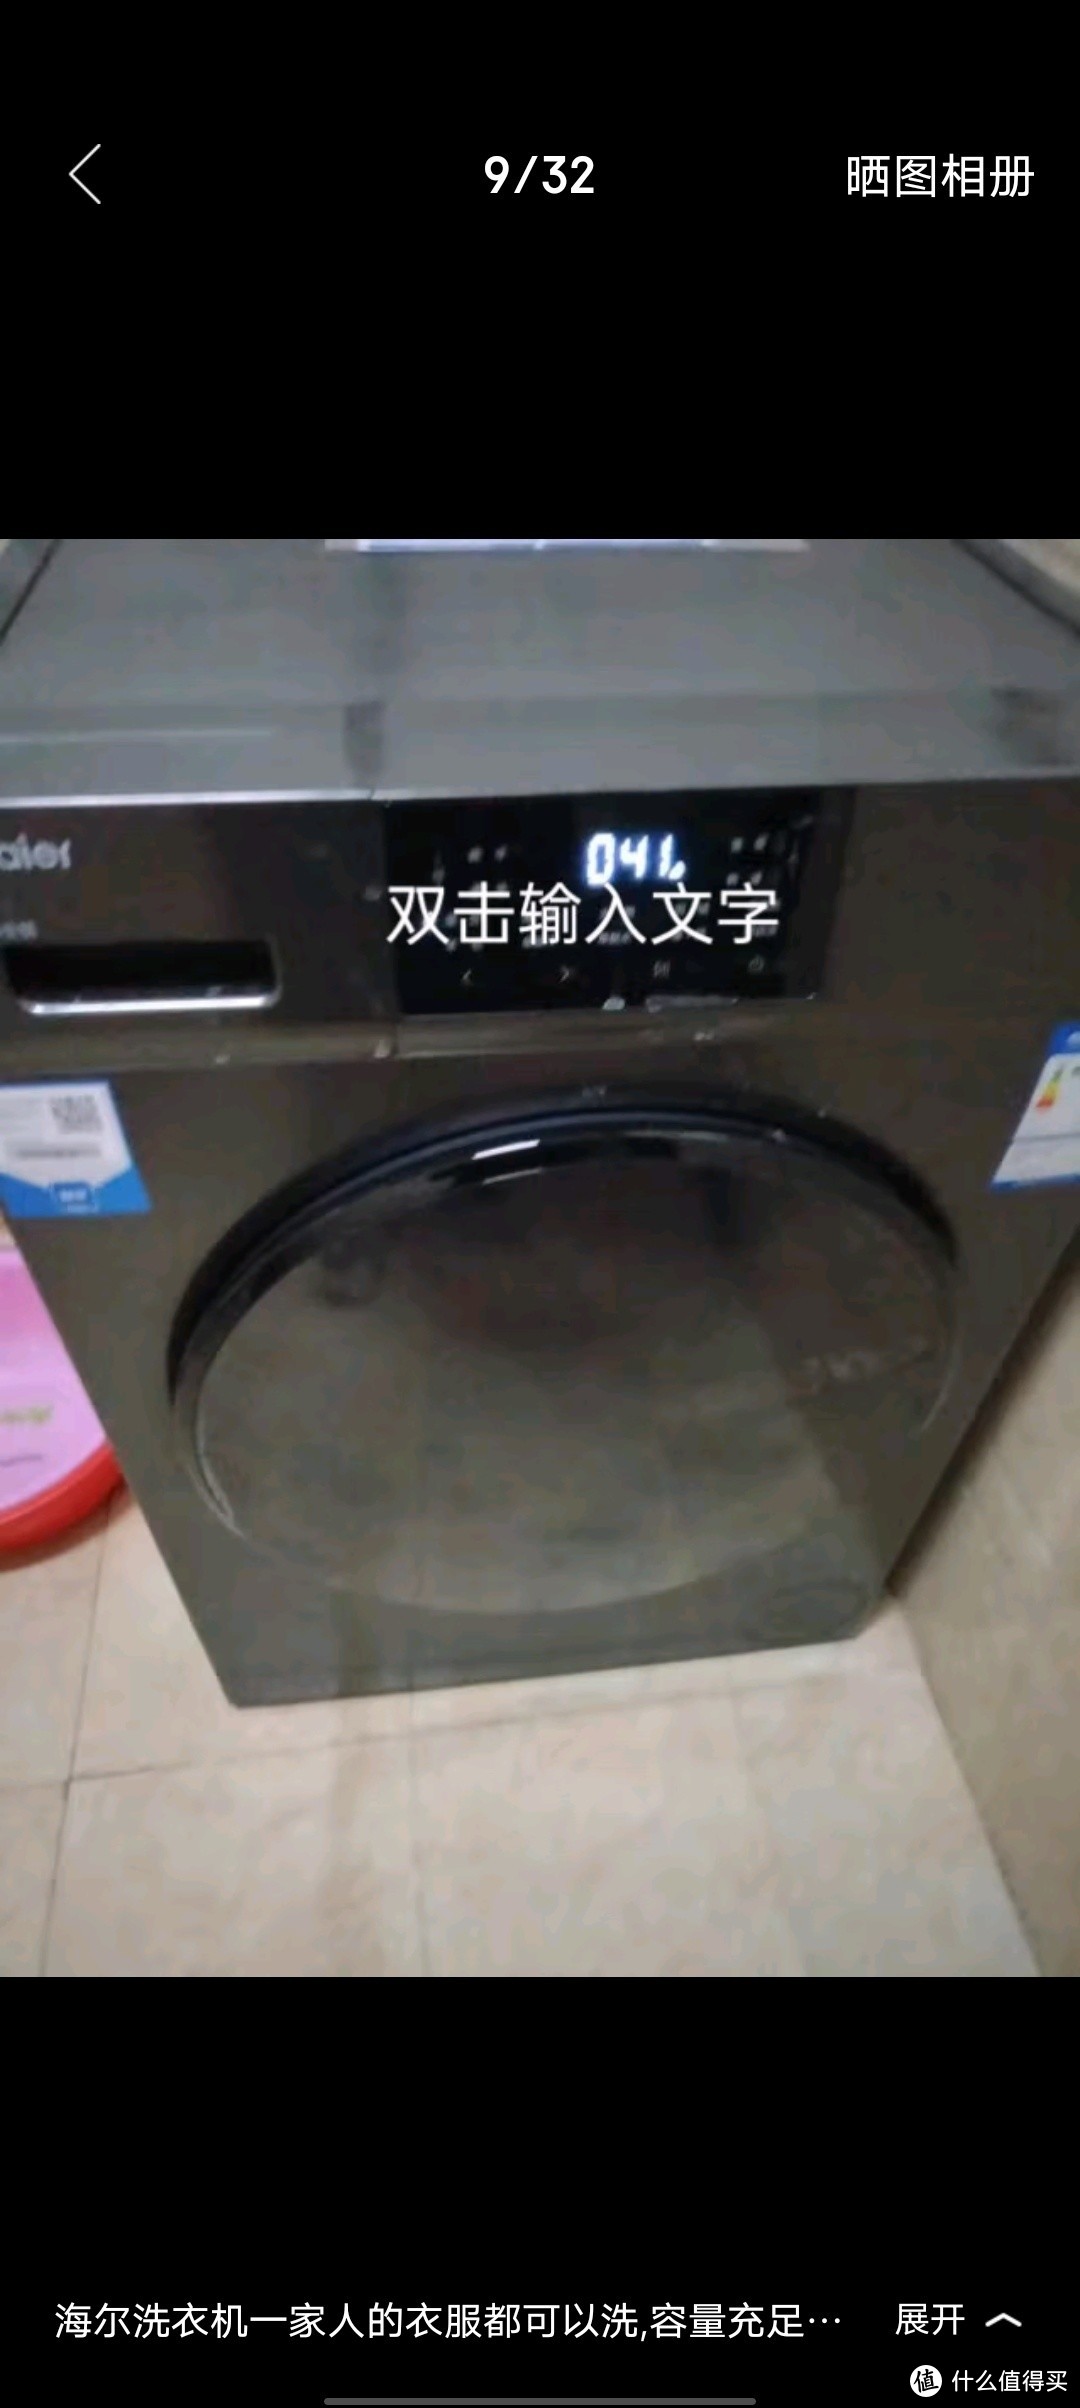 海尔滚筒洗衣机全自动 宝藏K39洗衣烘干一体机 超薄嵌入家用洗衣机1.1洗净比智能投放顽渍洗毛絮自清洁